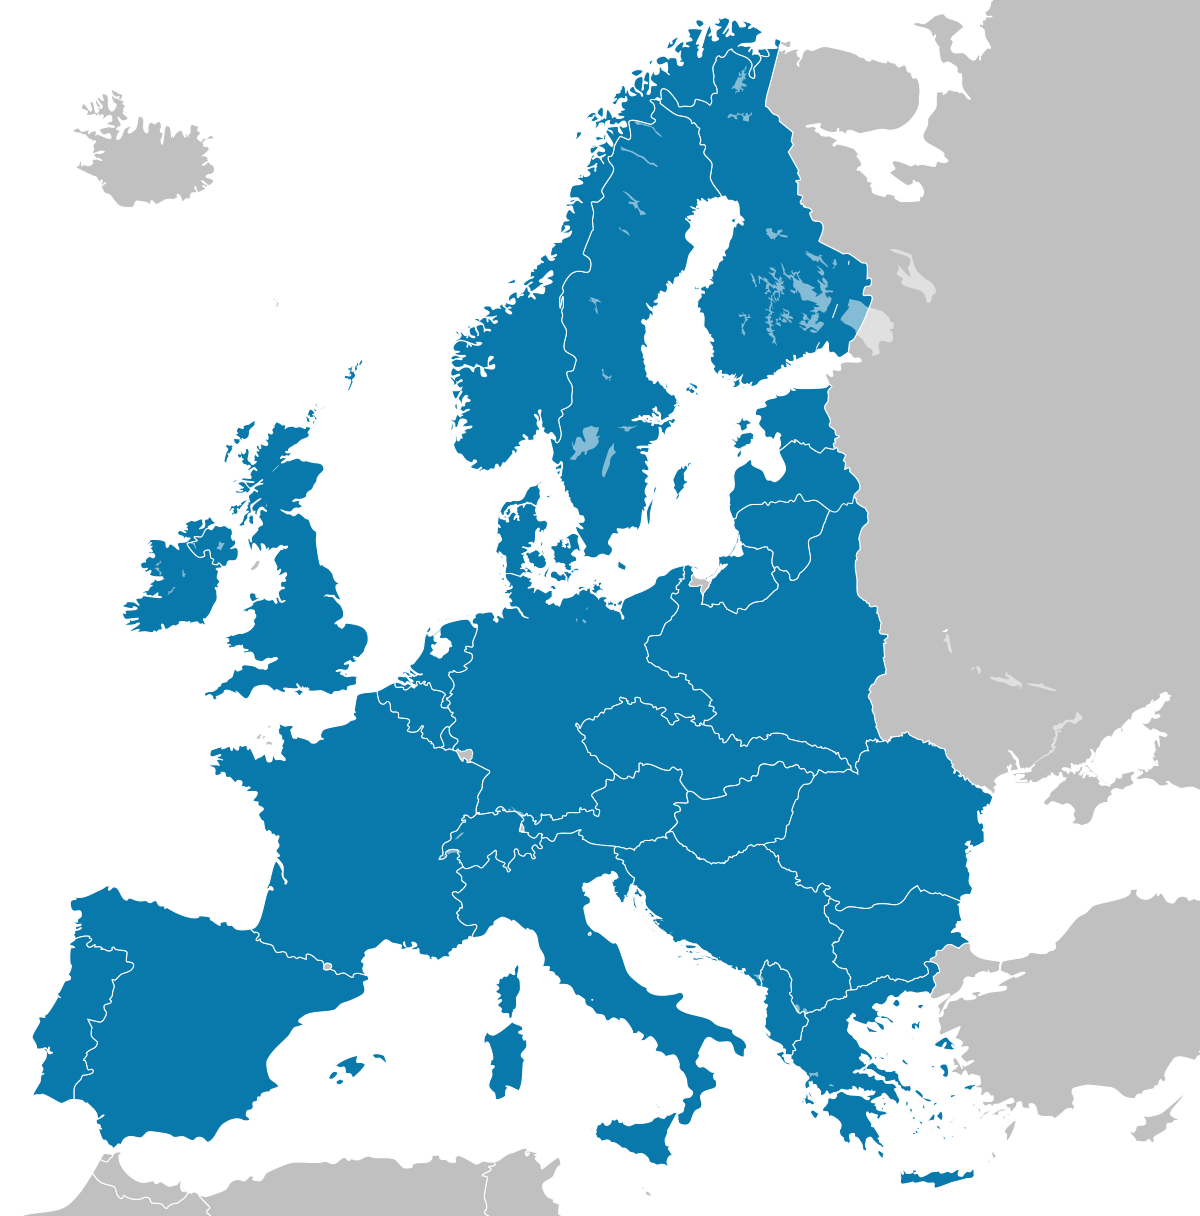 Страны европы федерациями. Евросоюз альтернативная история. Карта ЕС. Европейская Федерация. Альтернативный Евросоюз.